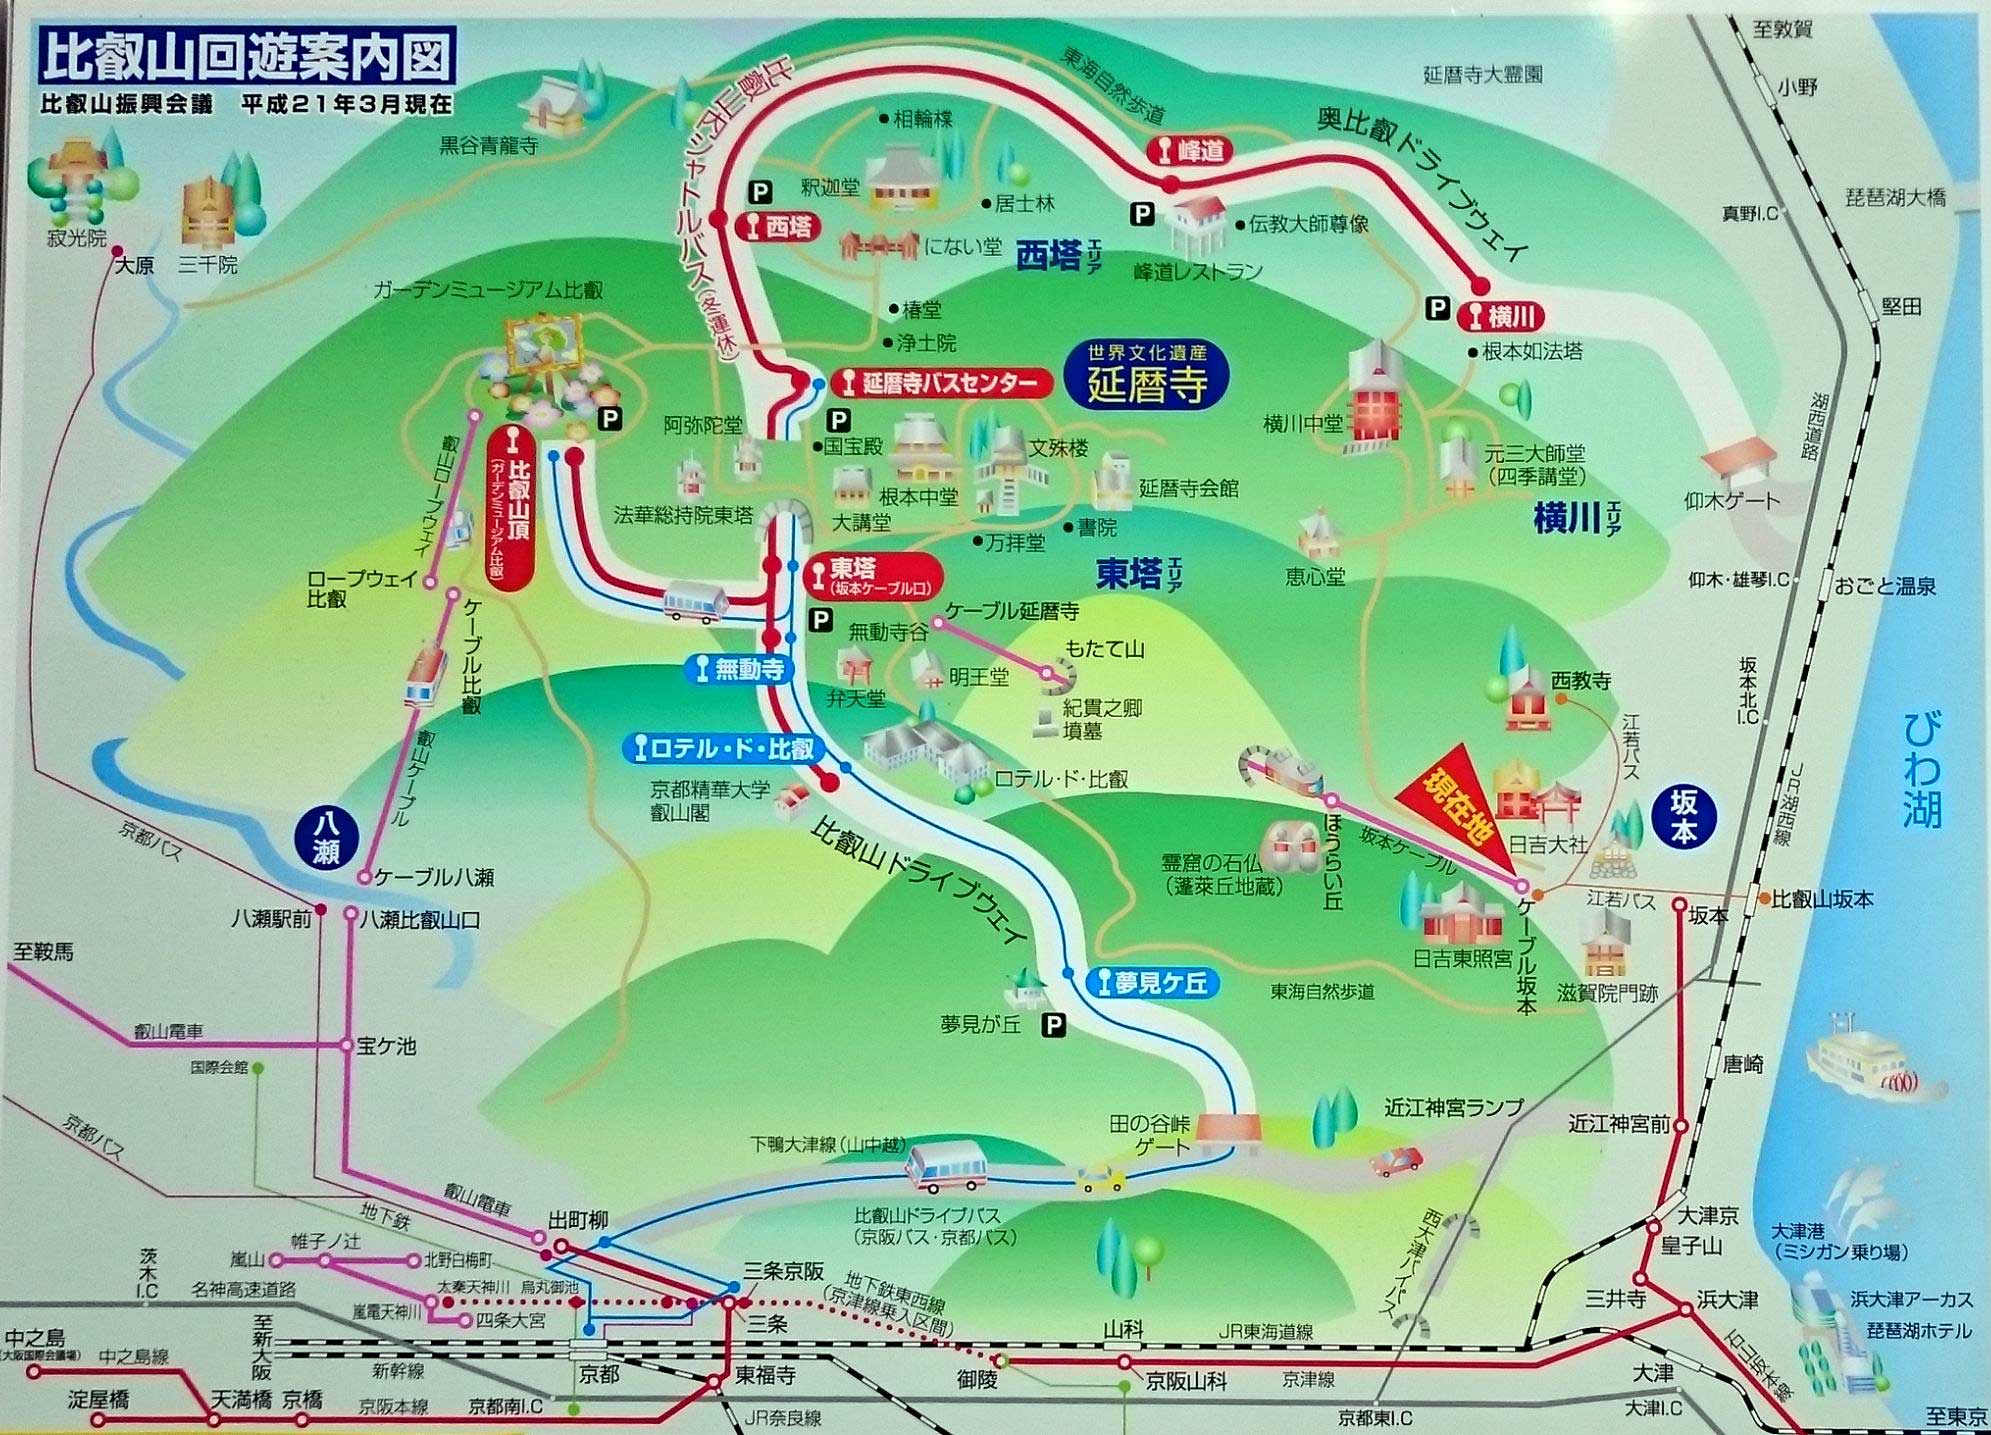 比叡山 延暦寺に電車 バスで行く場合の料金 各種割引 徹底比較 寺社巡りドットコム